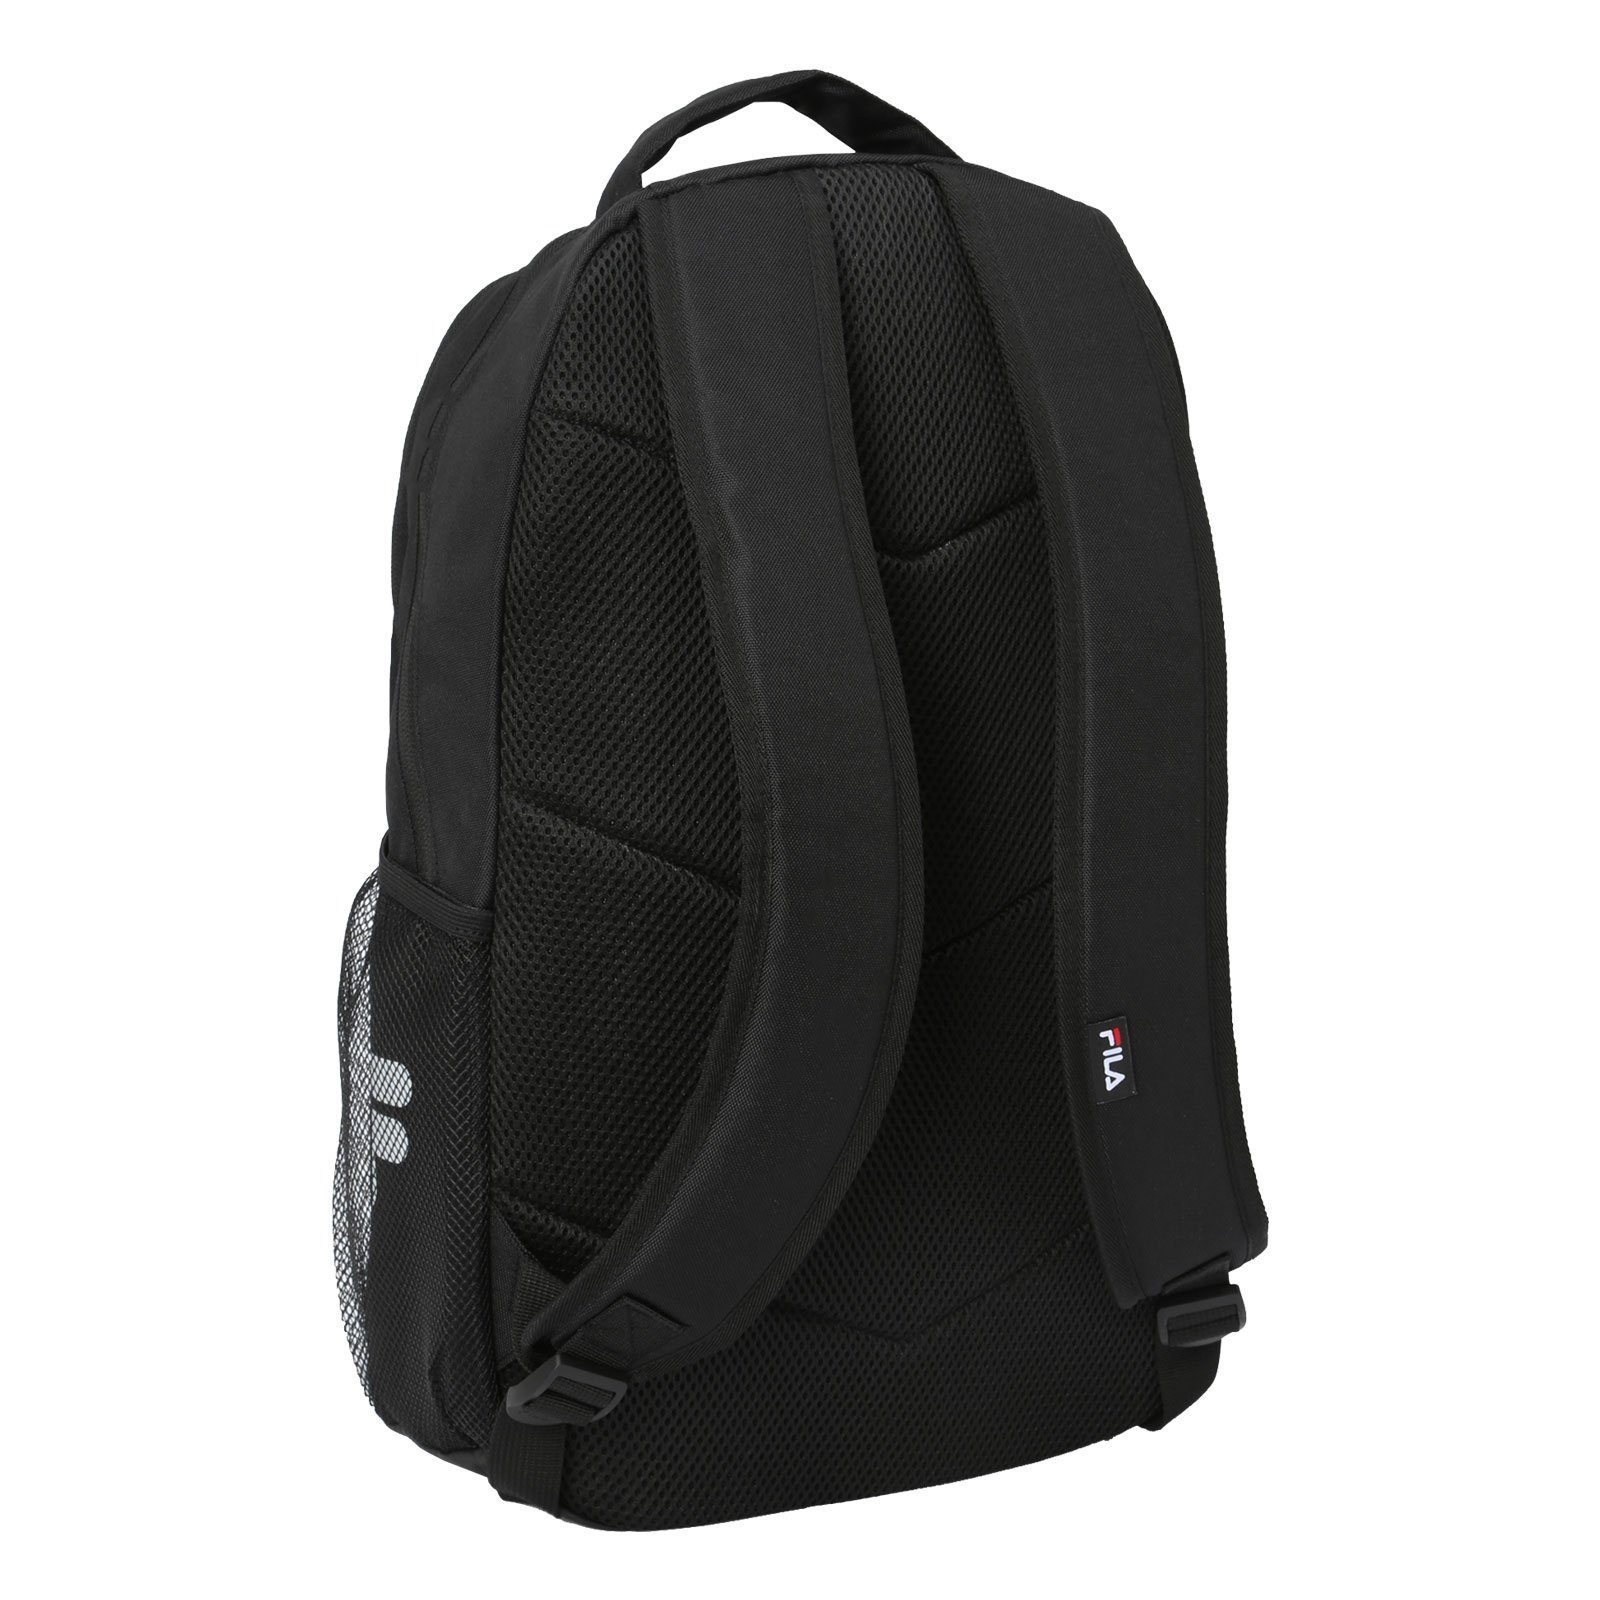 Fila Backpack, Vertical mit Markenschriftzug Active großem Folsom Rucksack